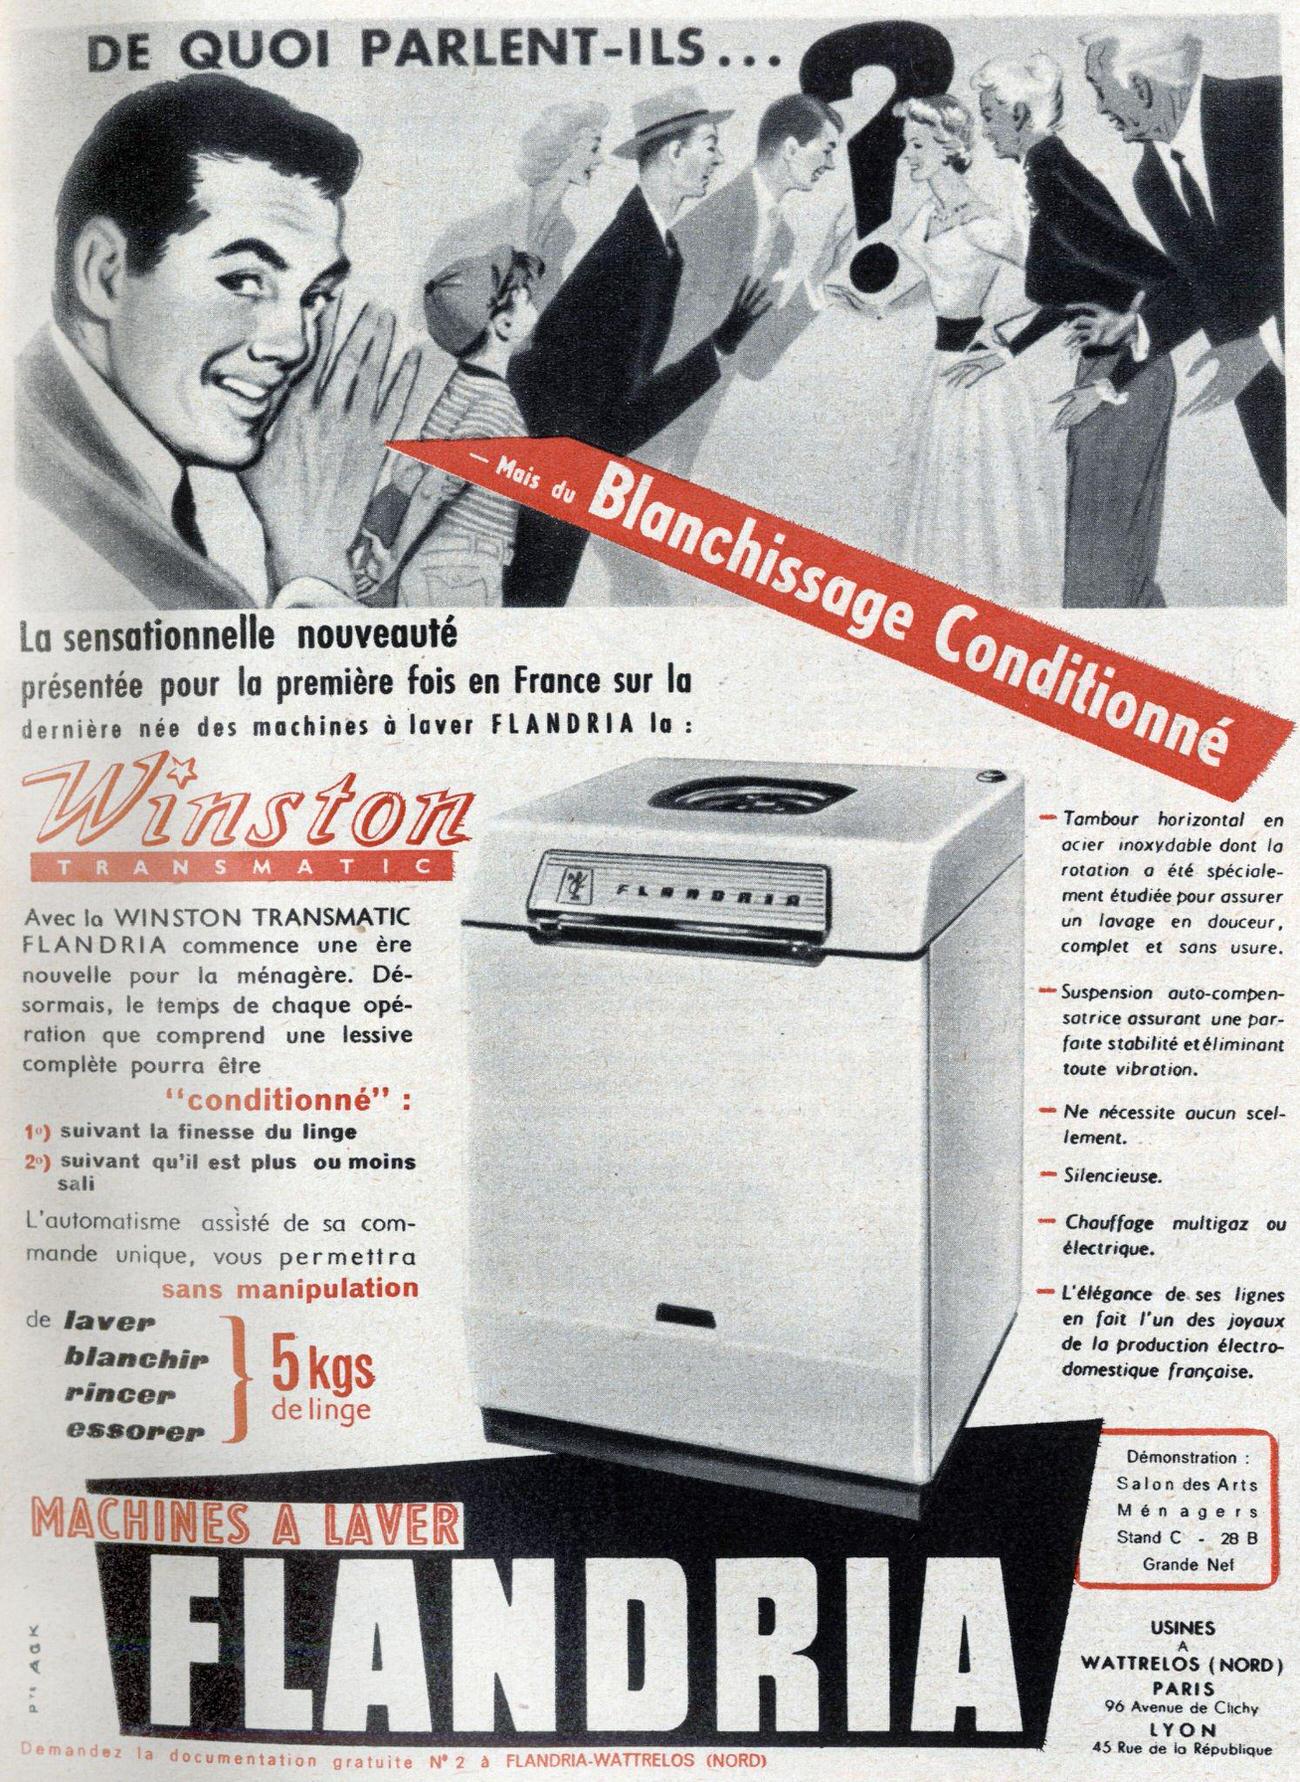 Flandria washing machine advertisement, 1958.